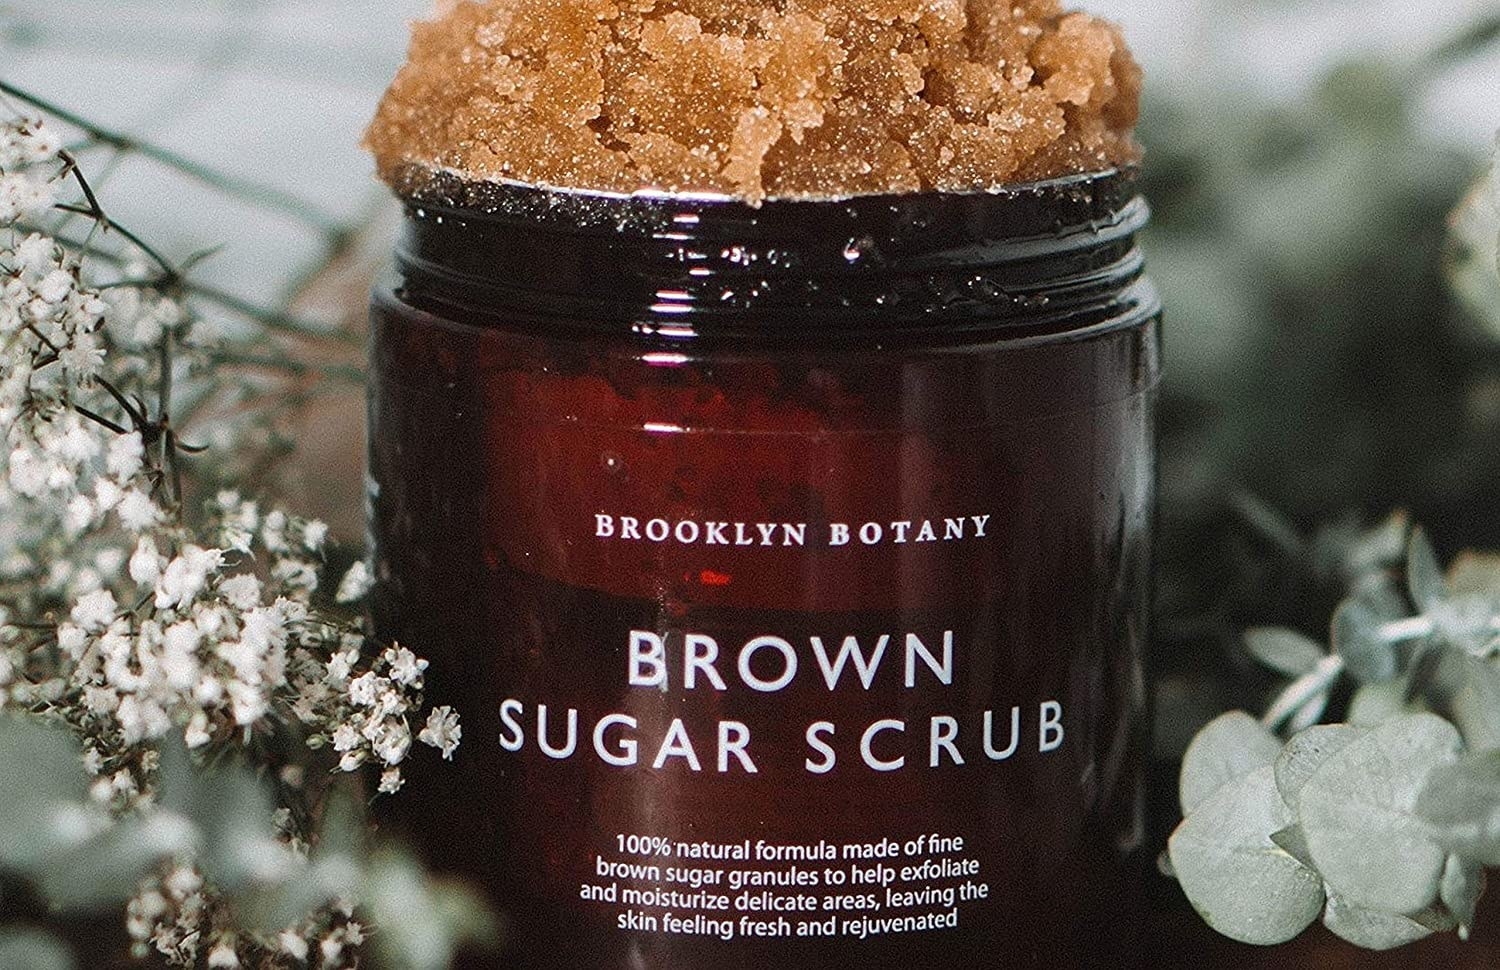 the brown sugar body scrub in its jar